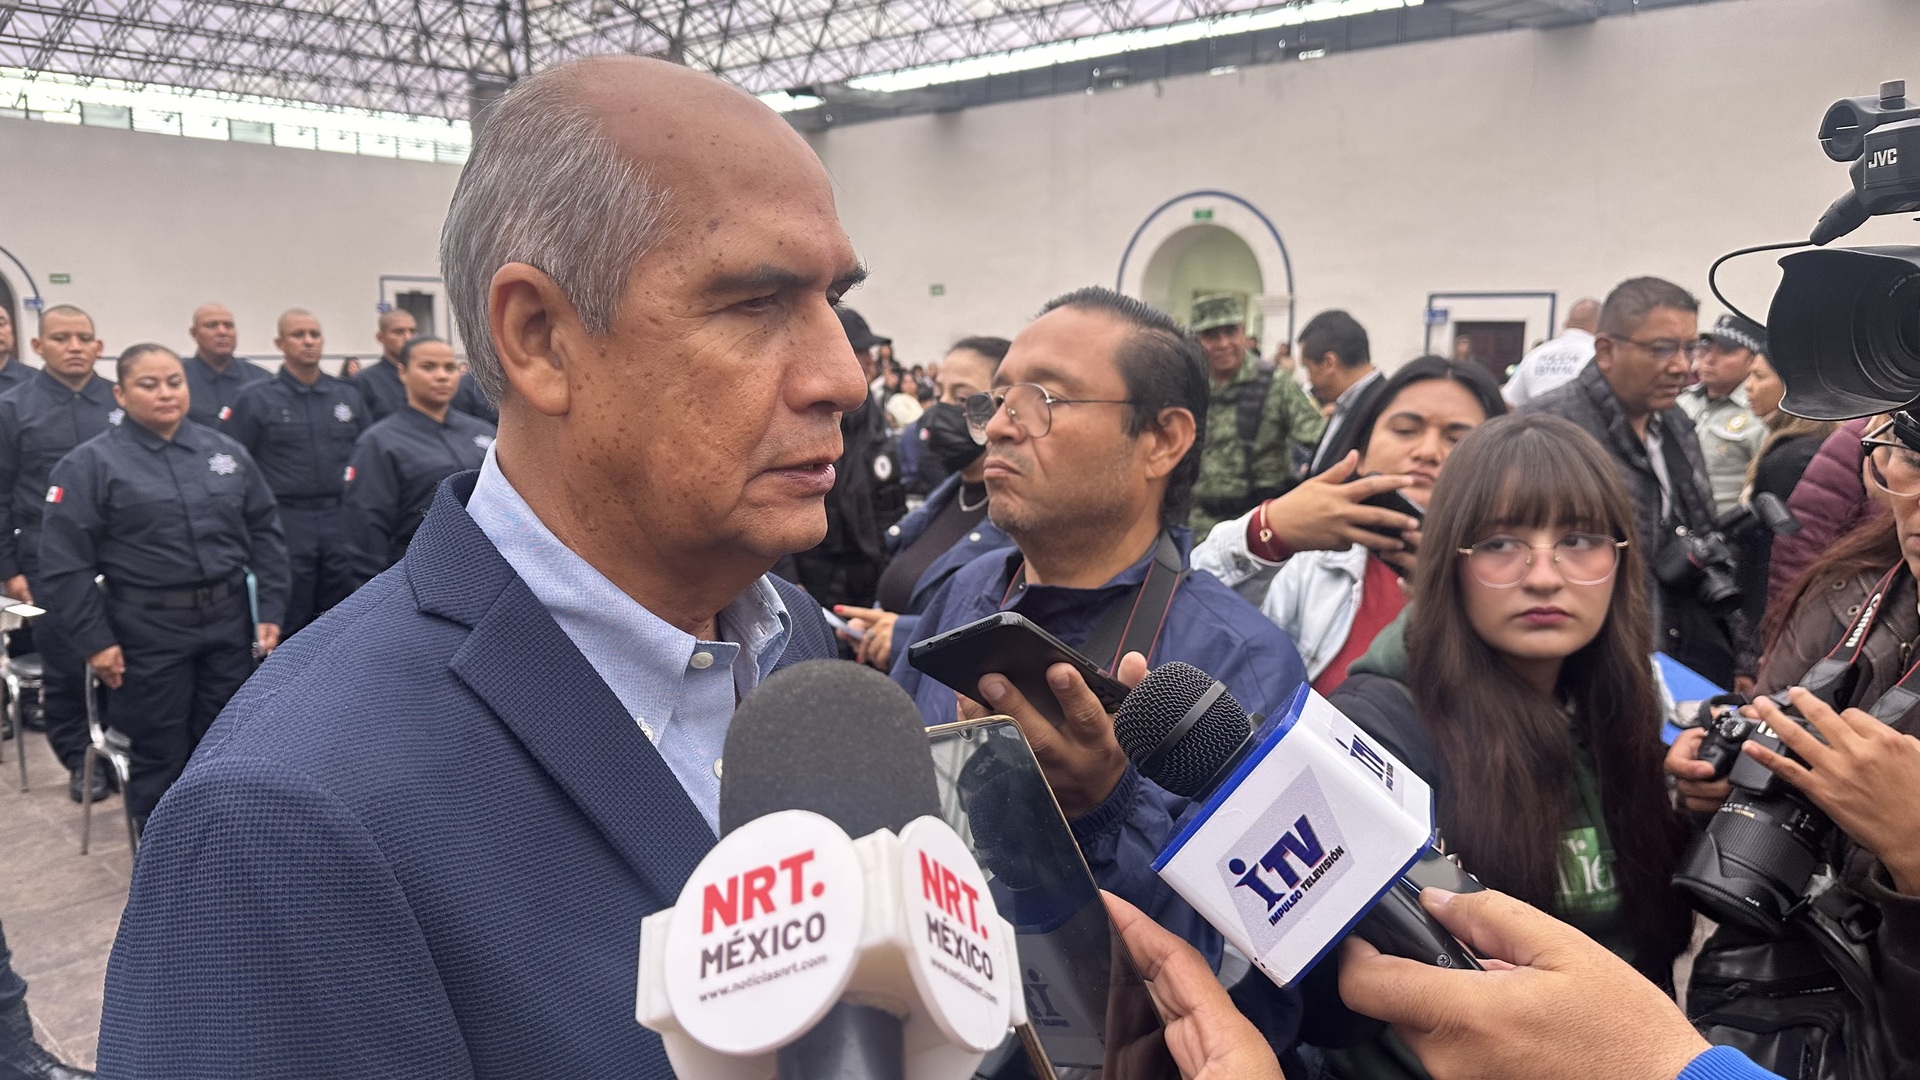 El presidente municipal Mario Dávila Delgado informó que los trabajos se realizarán en terrenos ubicados en el nororiente de Monclova. (Foto: SERGIO A. RODRÍGUEZ / EL SIGLO COAHUILA)